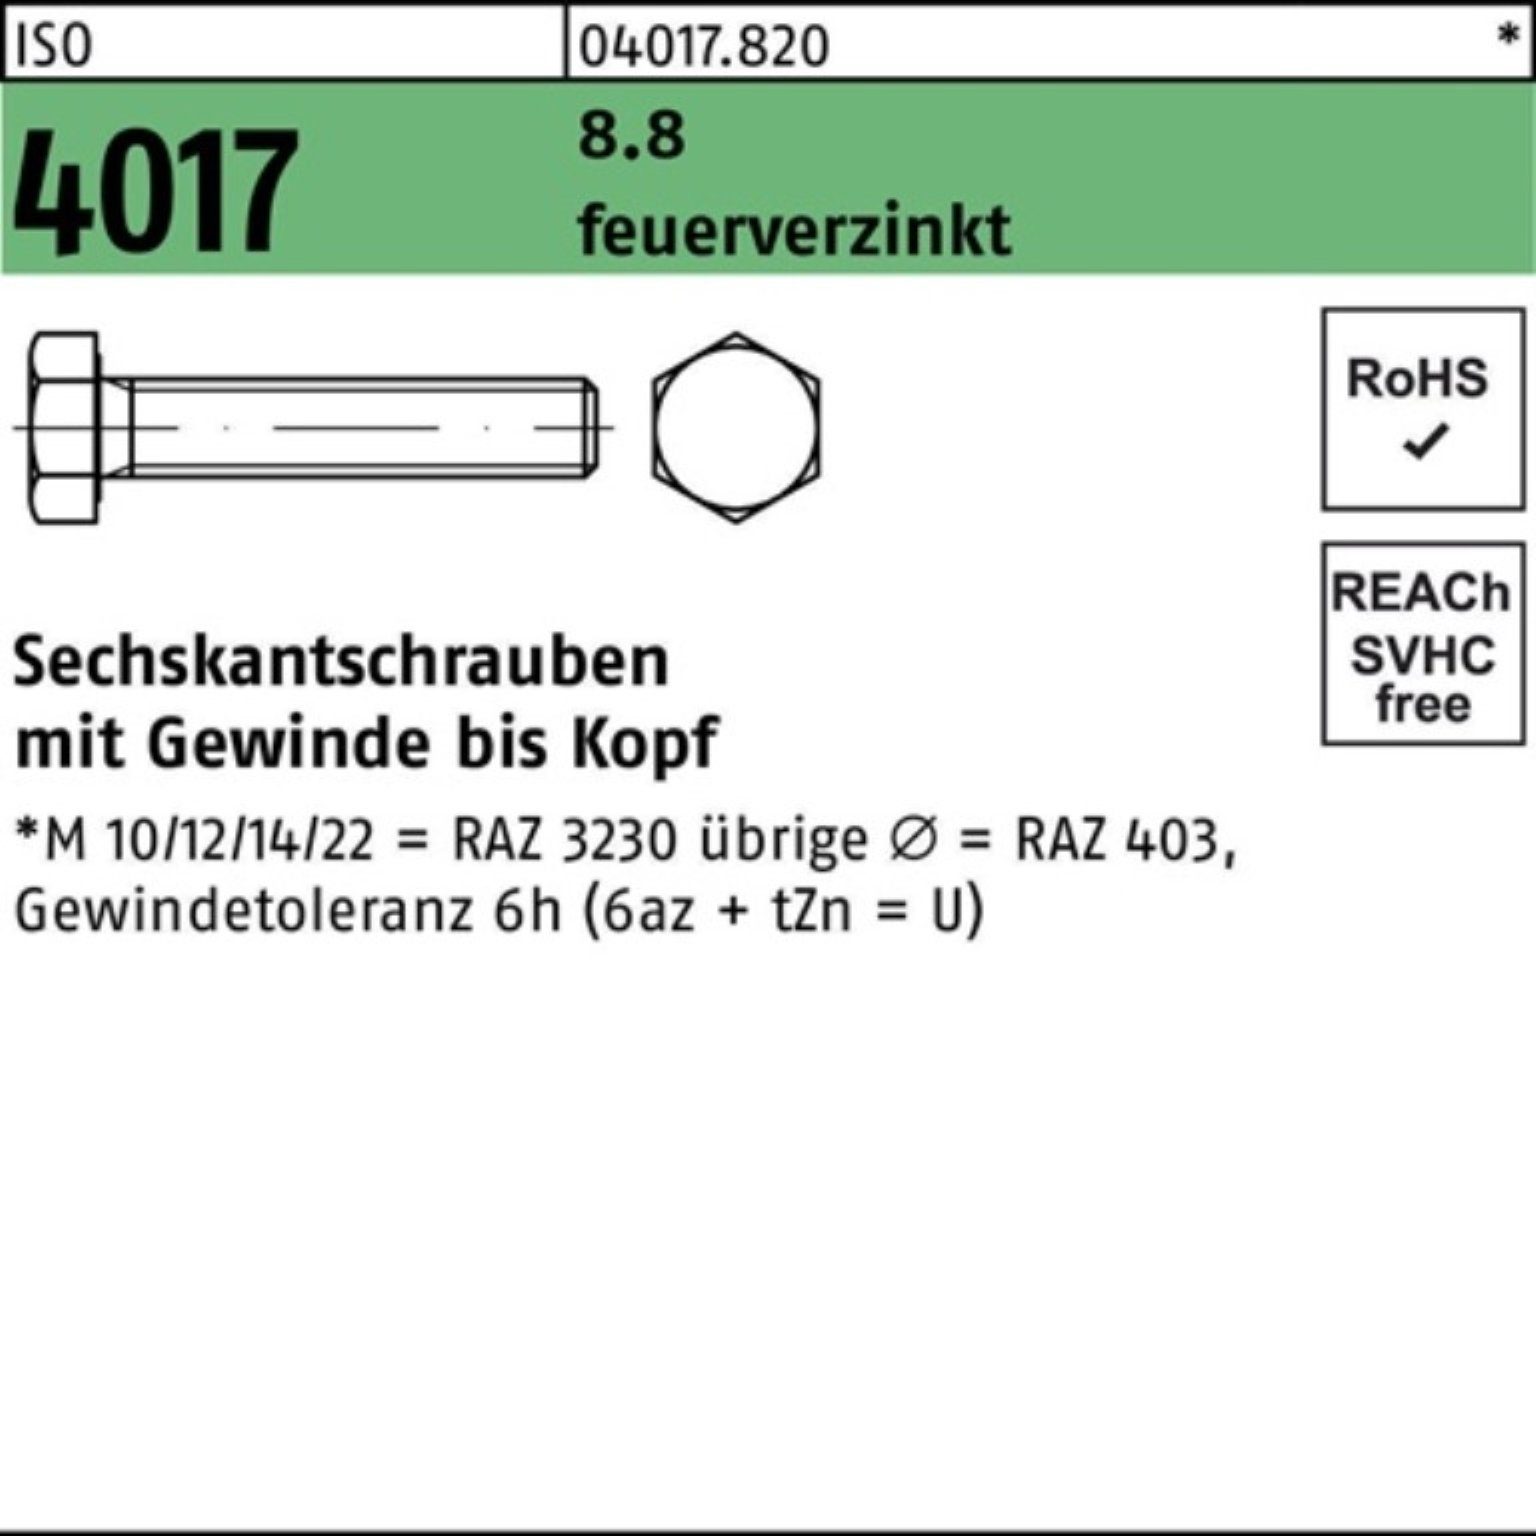 Bufab Sechskantschraube 100er Pack Sechskantschraube feuerverz. 1 ISO M24x VG 4017 St 150 8.8